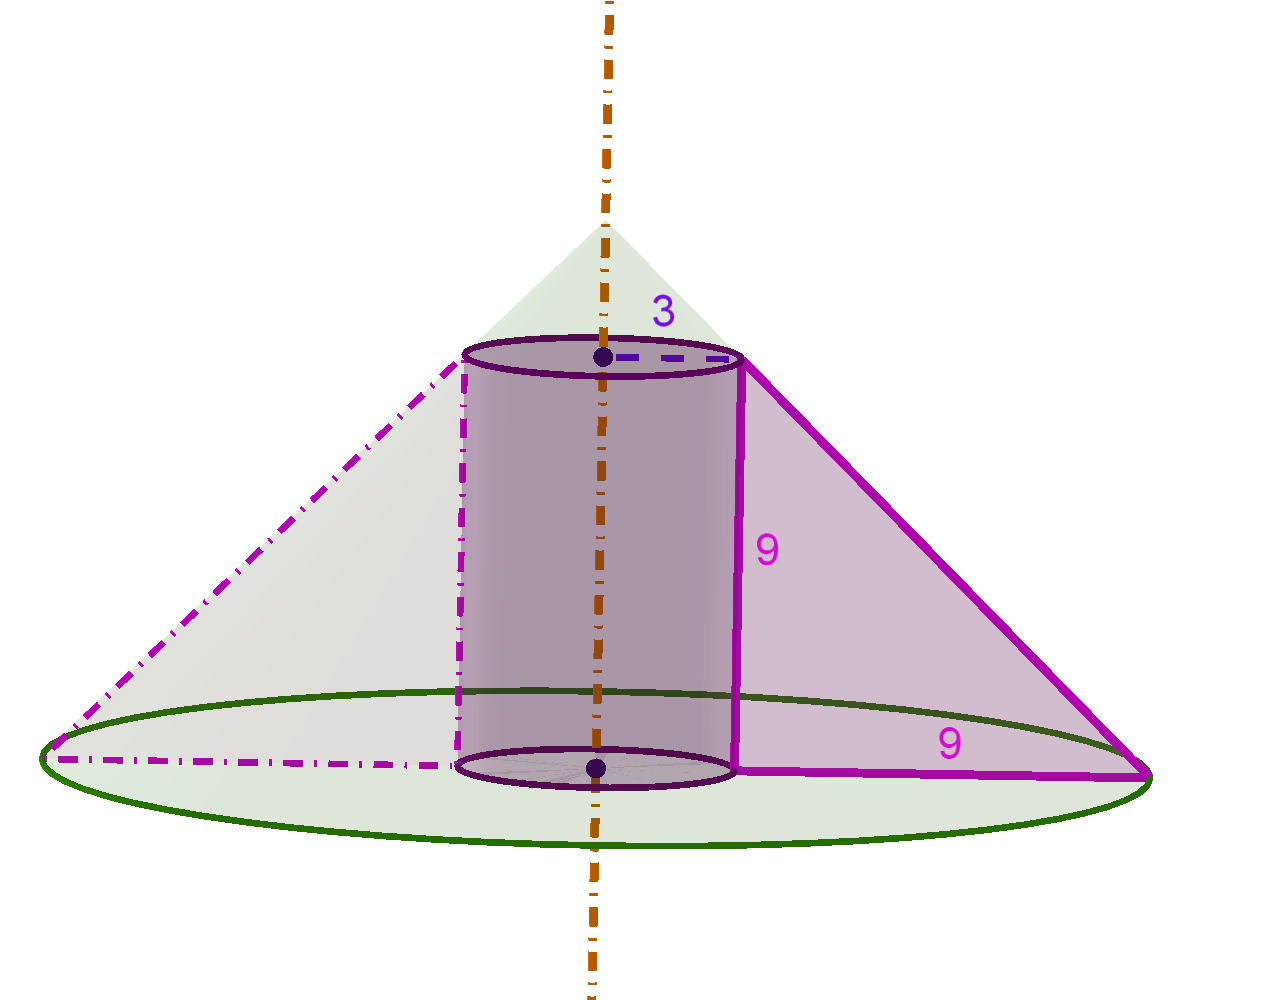 Rotacijsko tijelo nastalo rotacijom pravokutnog trokuta iz zadatka.